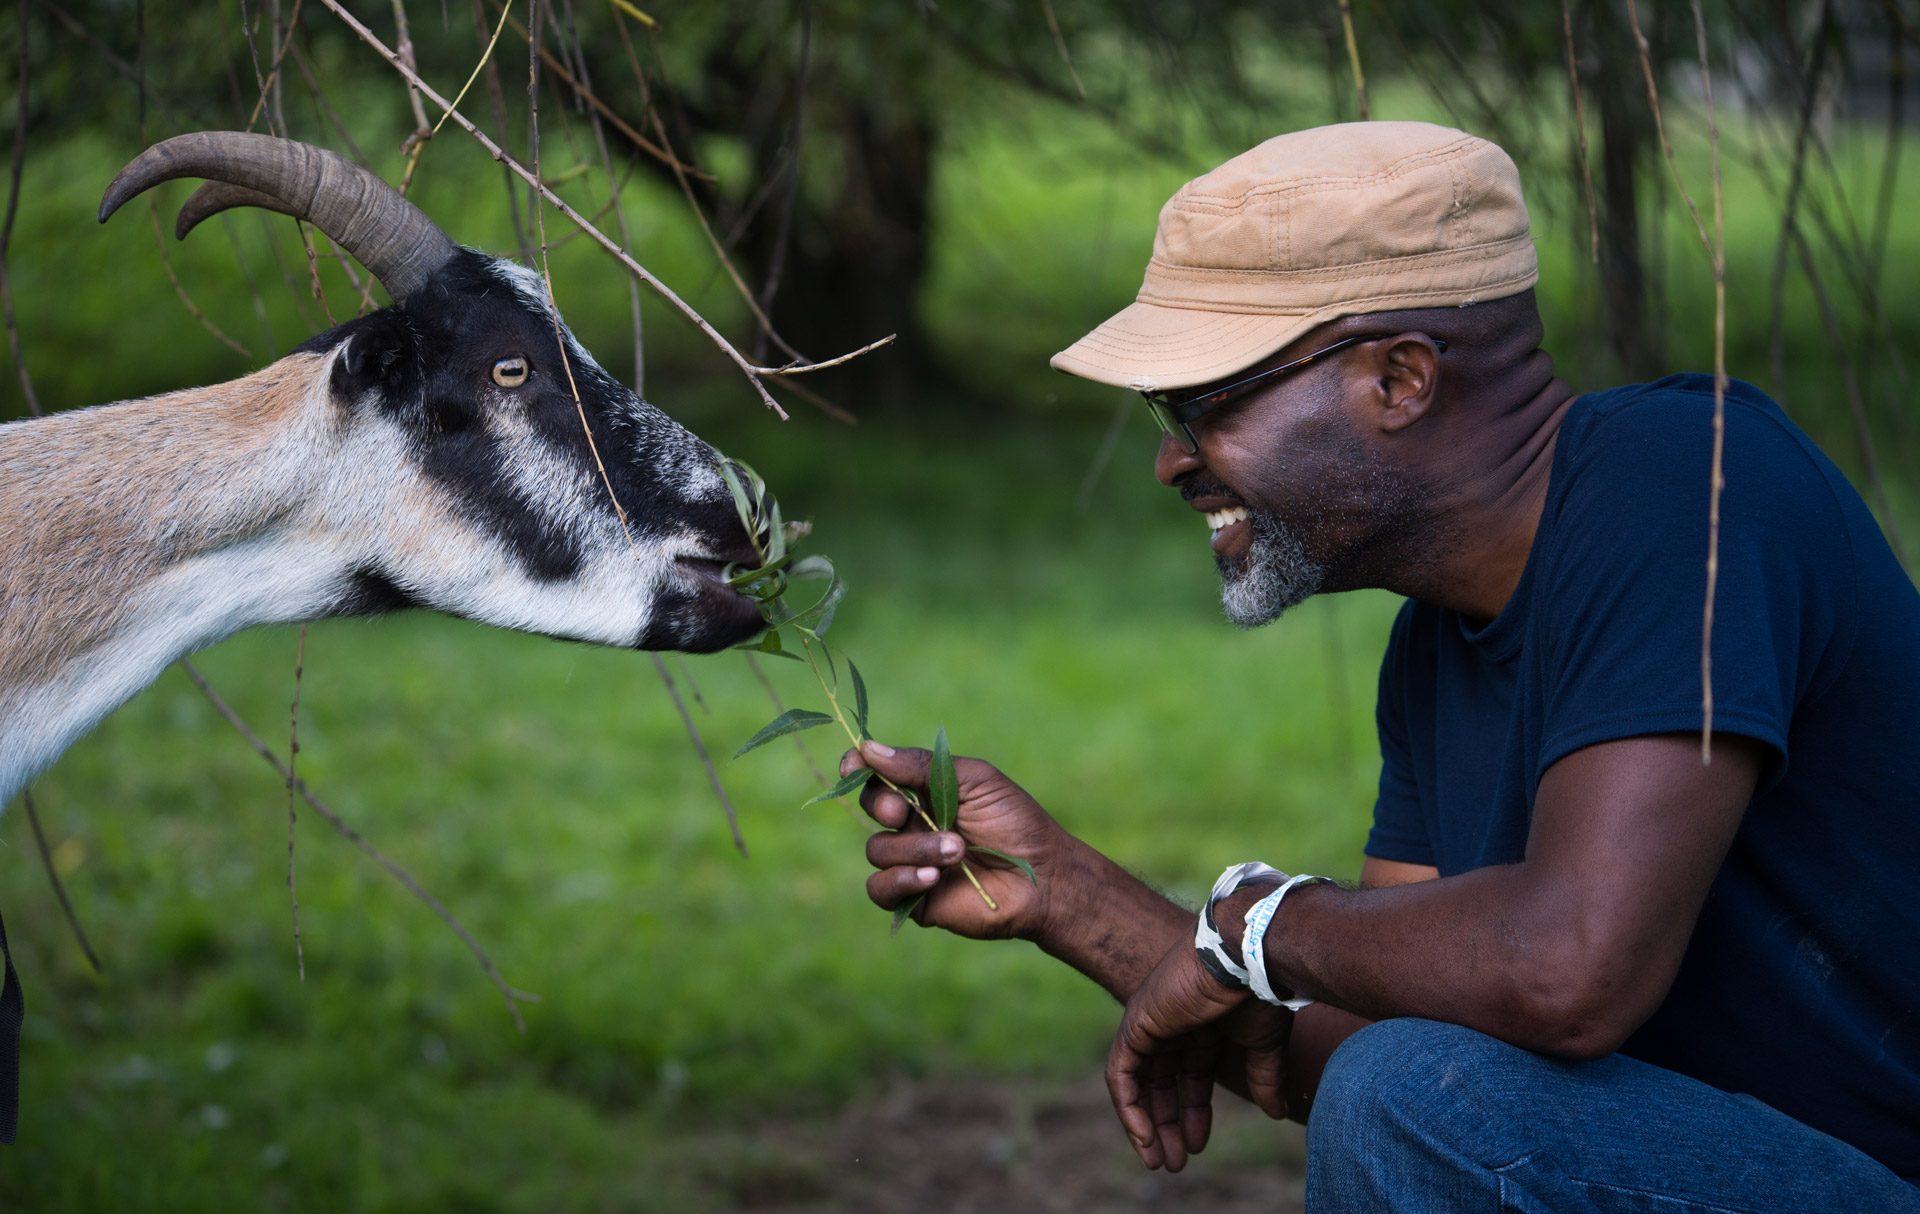 Benedict goat and guest at Farm Sanctuary. Photo: Jo-Anne McArthur